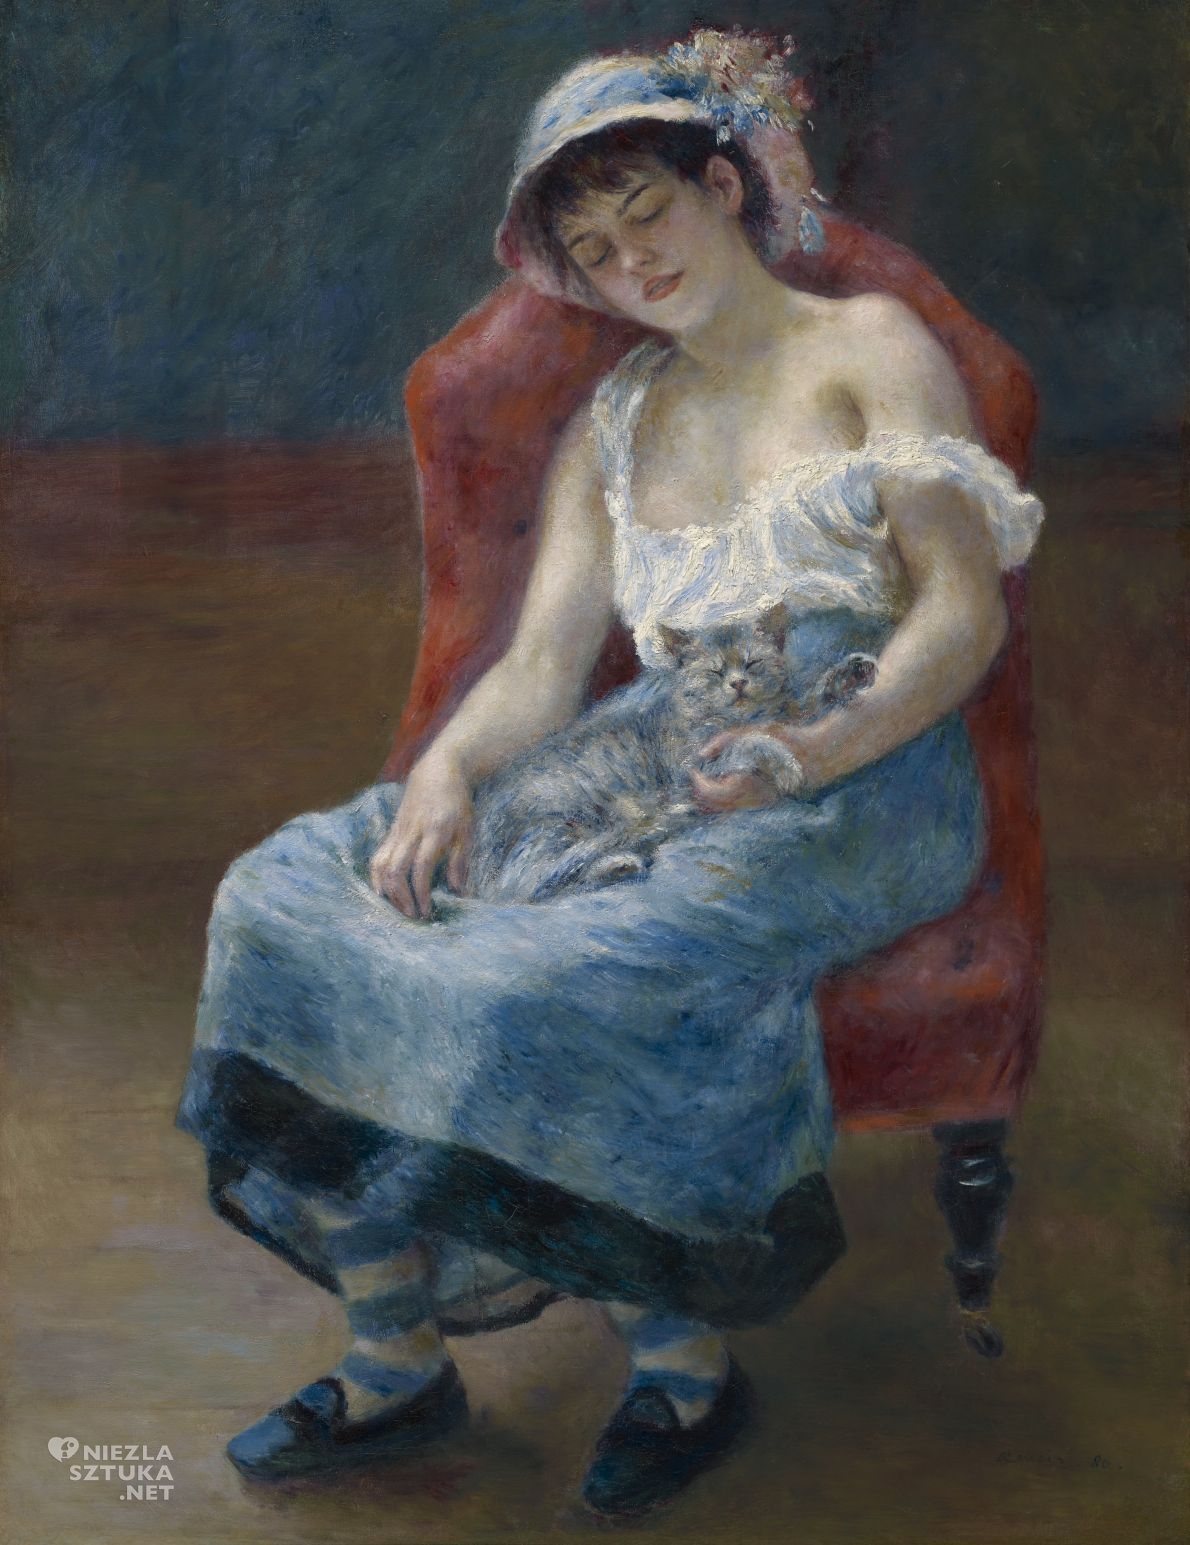 Pierre-Auguste Renoir, Sleeping Girl with a Cat, olej, płótno, portret, impresjonizm, niezła sztuka